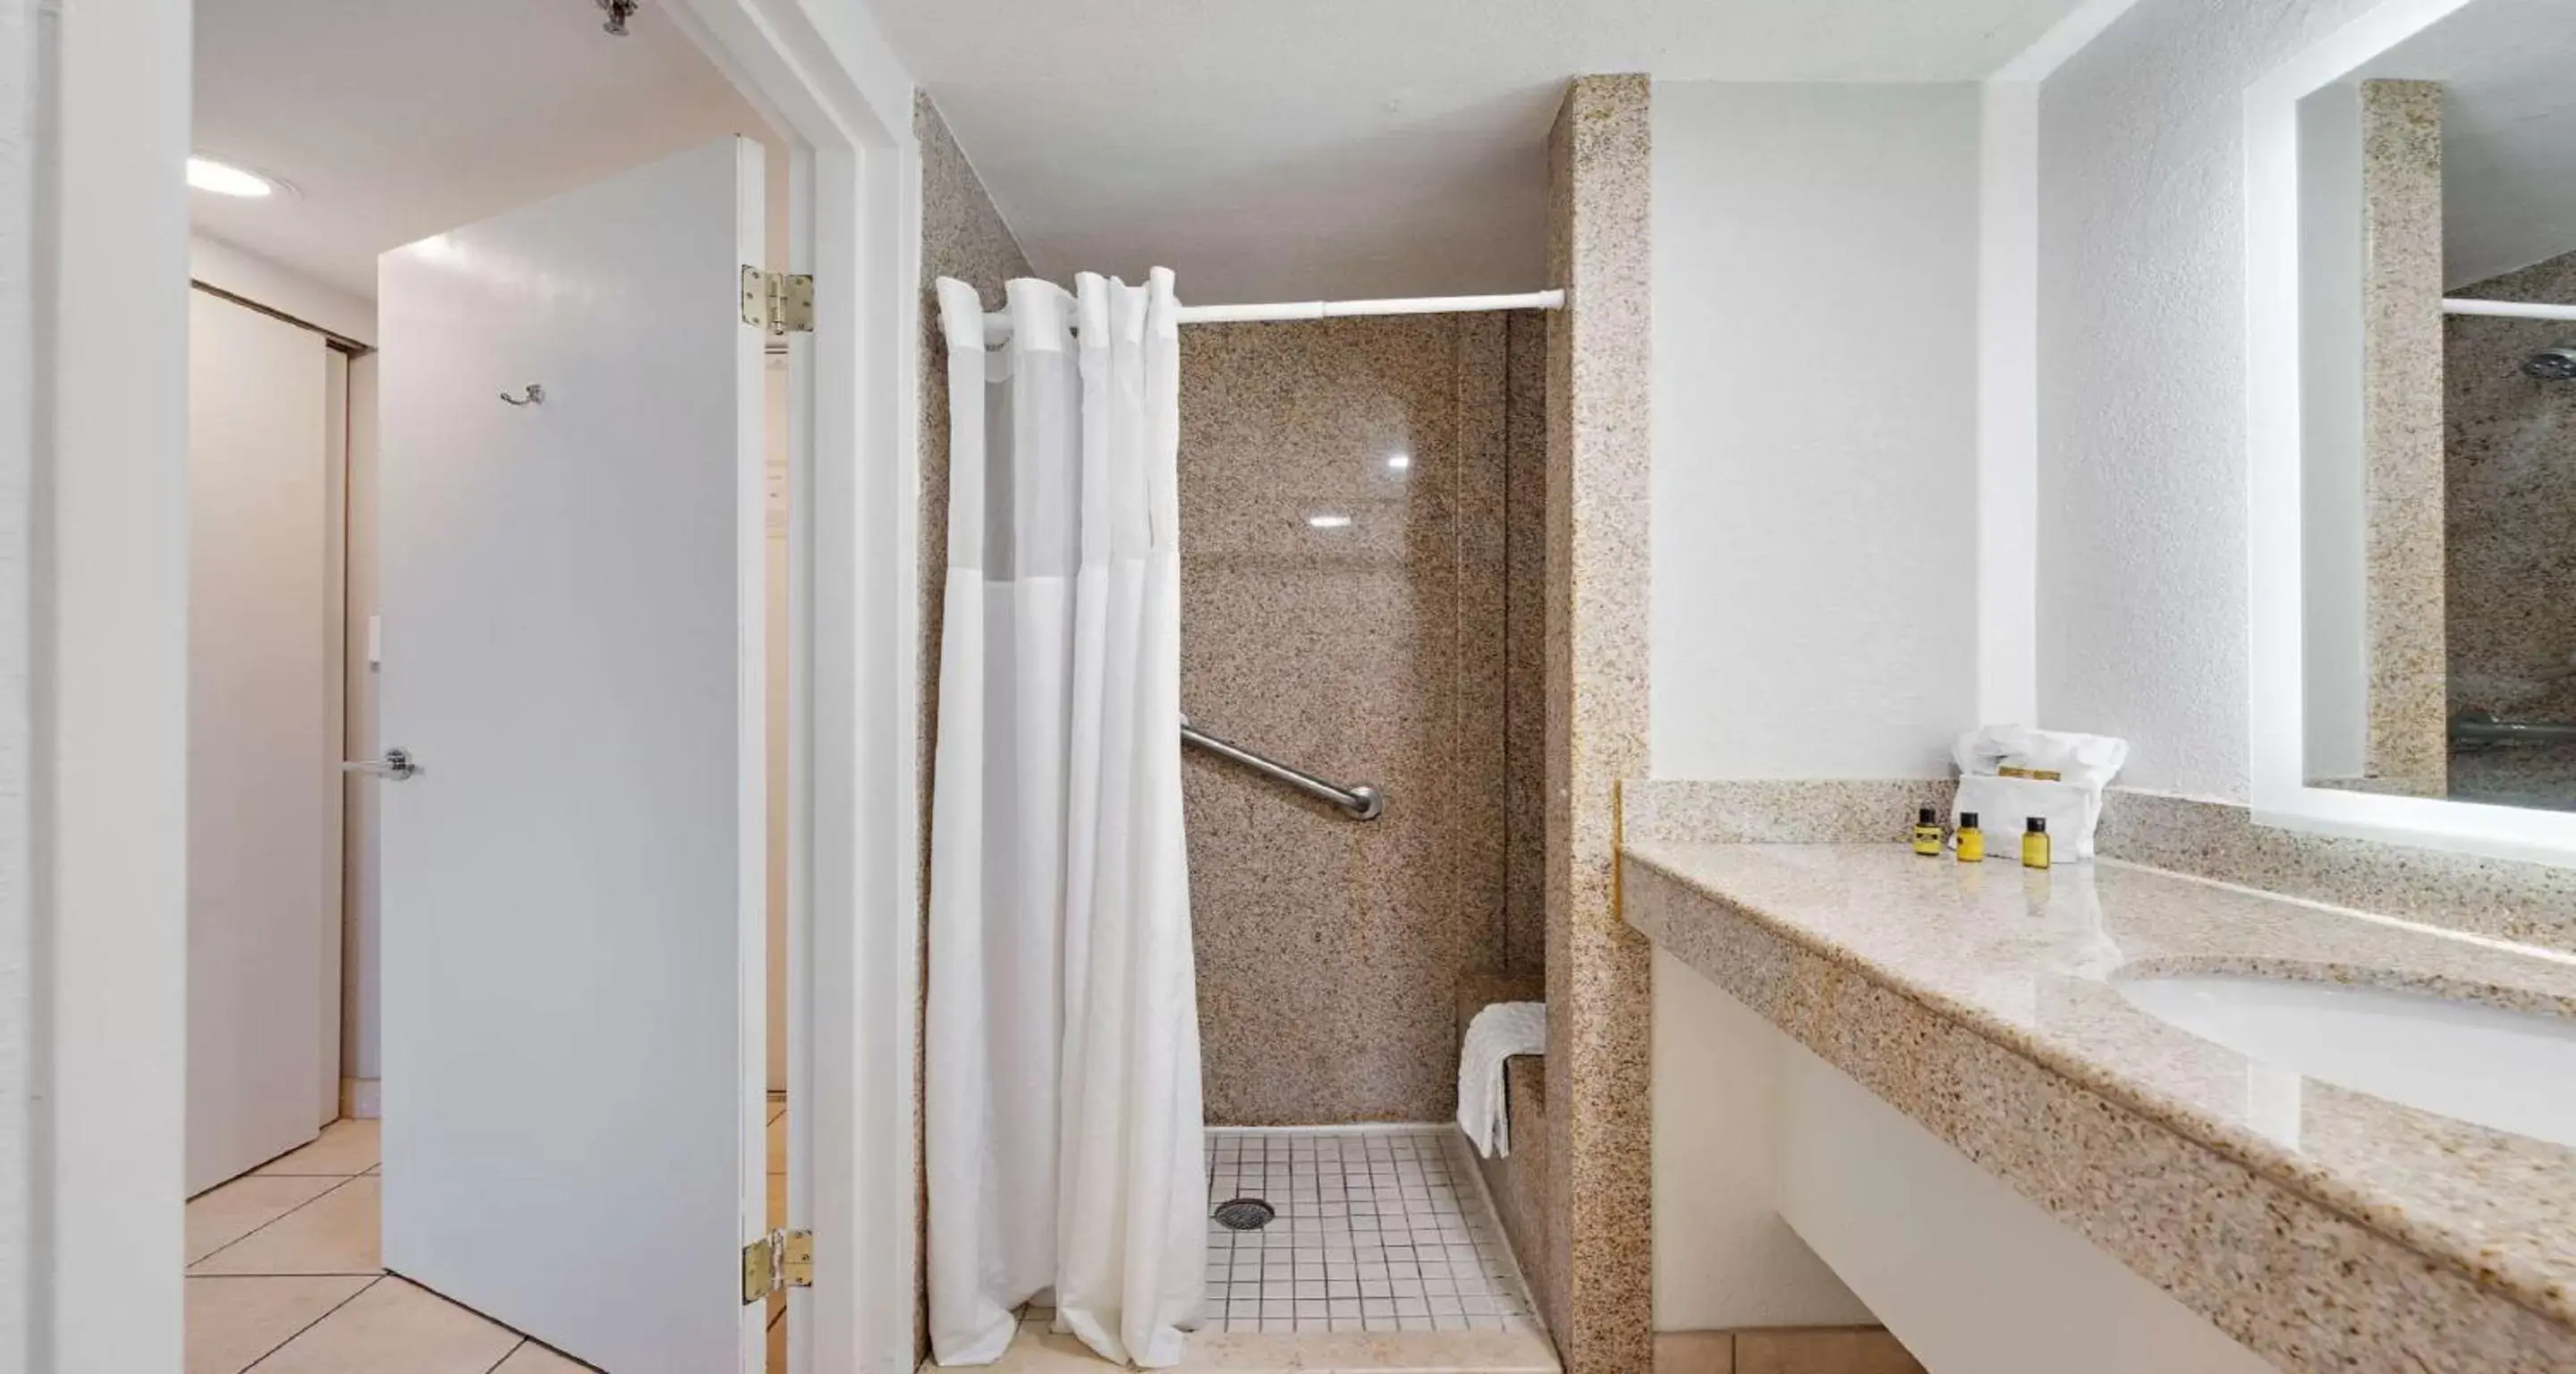 Bathroom in Best Western Plus Holiday Sands Inn & Suites